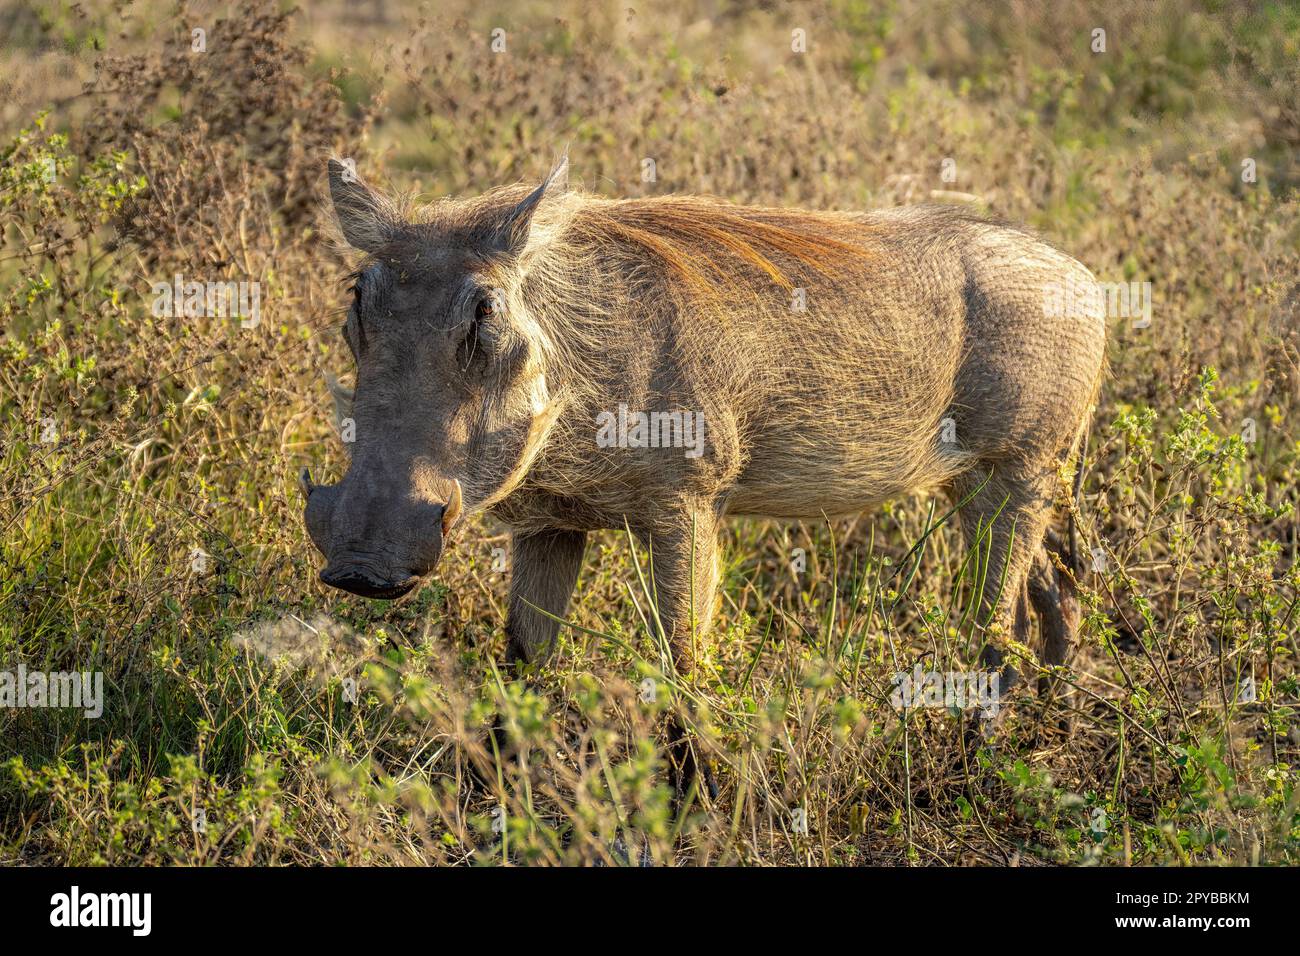 Ein gewöhnliches Warzenschwein steht in einer Graslinse Stockfoto